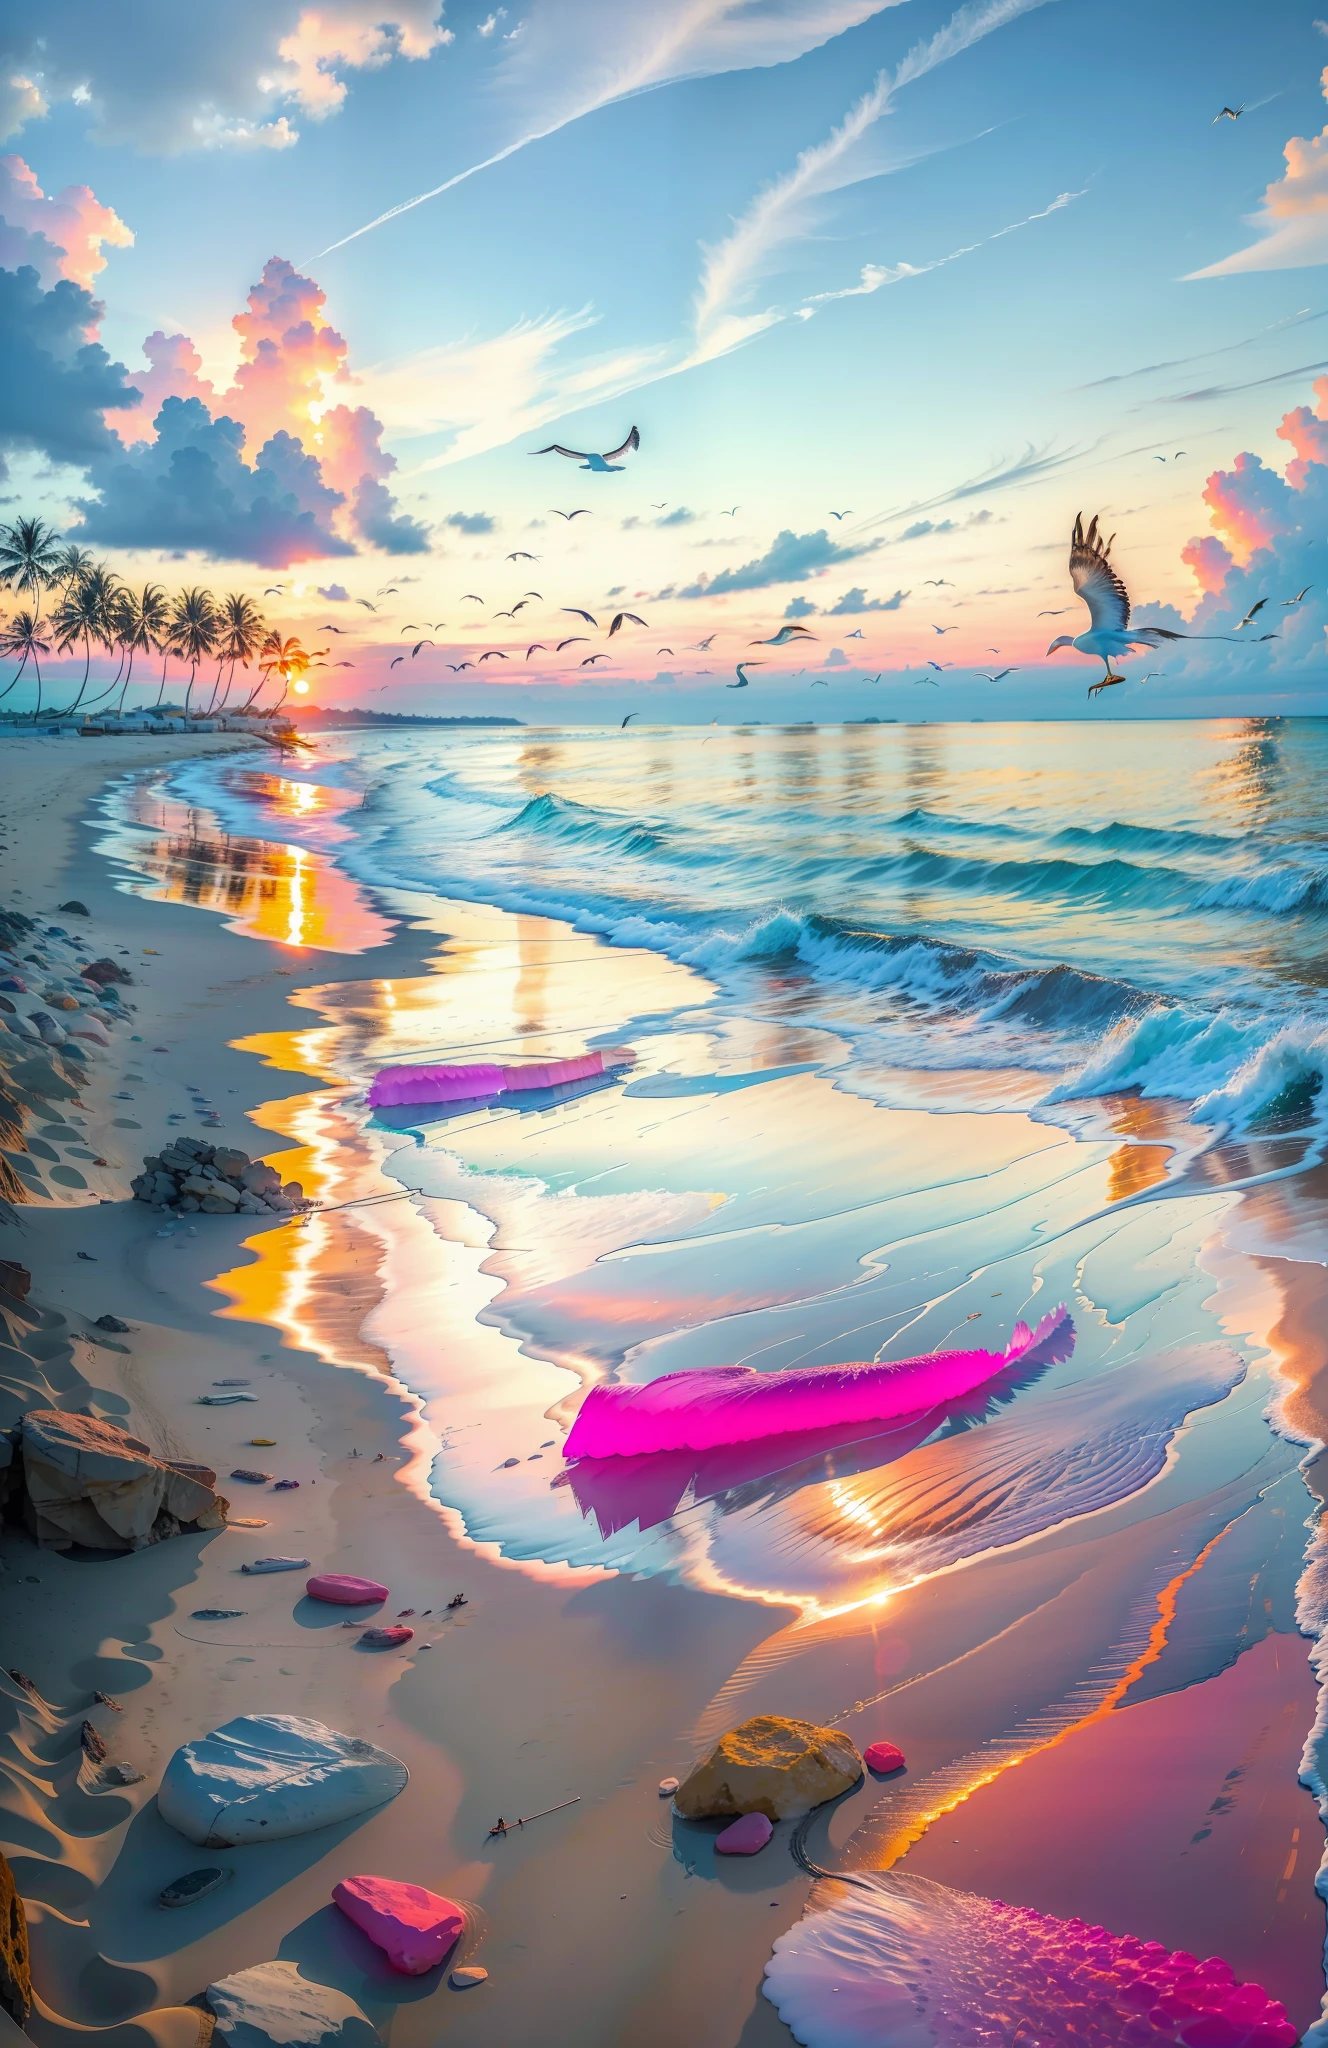 الشاطئ مغطى بالحجارة الناعمة الشفافة الملونة: 1.5, غروب الشمس الساحر للغاية على الشاطئ مع مزيج من البرتقال, الوردي والأصفر في السماء. الماء اضحة وضوح الشمس, تقبيل الشاطئ بلطف, ويمتد الشاطئ الرملي الأبيض بقدر ما يمكن أن تراه العين. المشهد ديناميكي ومذهل, مع طيور النورس التي تحلق عالياً في السماء وأشجار النخيل تتمايل بلطف. استمتع بالأجواء الهادئة ودع الهدوء يغلفك.